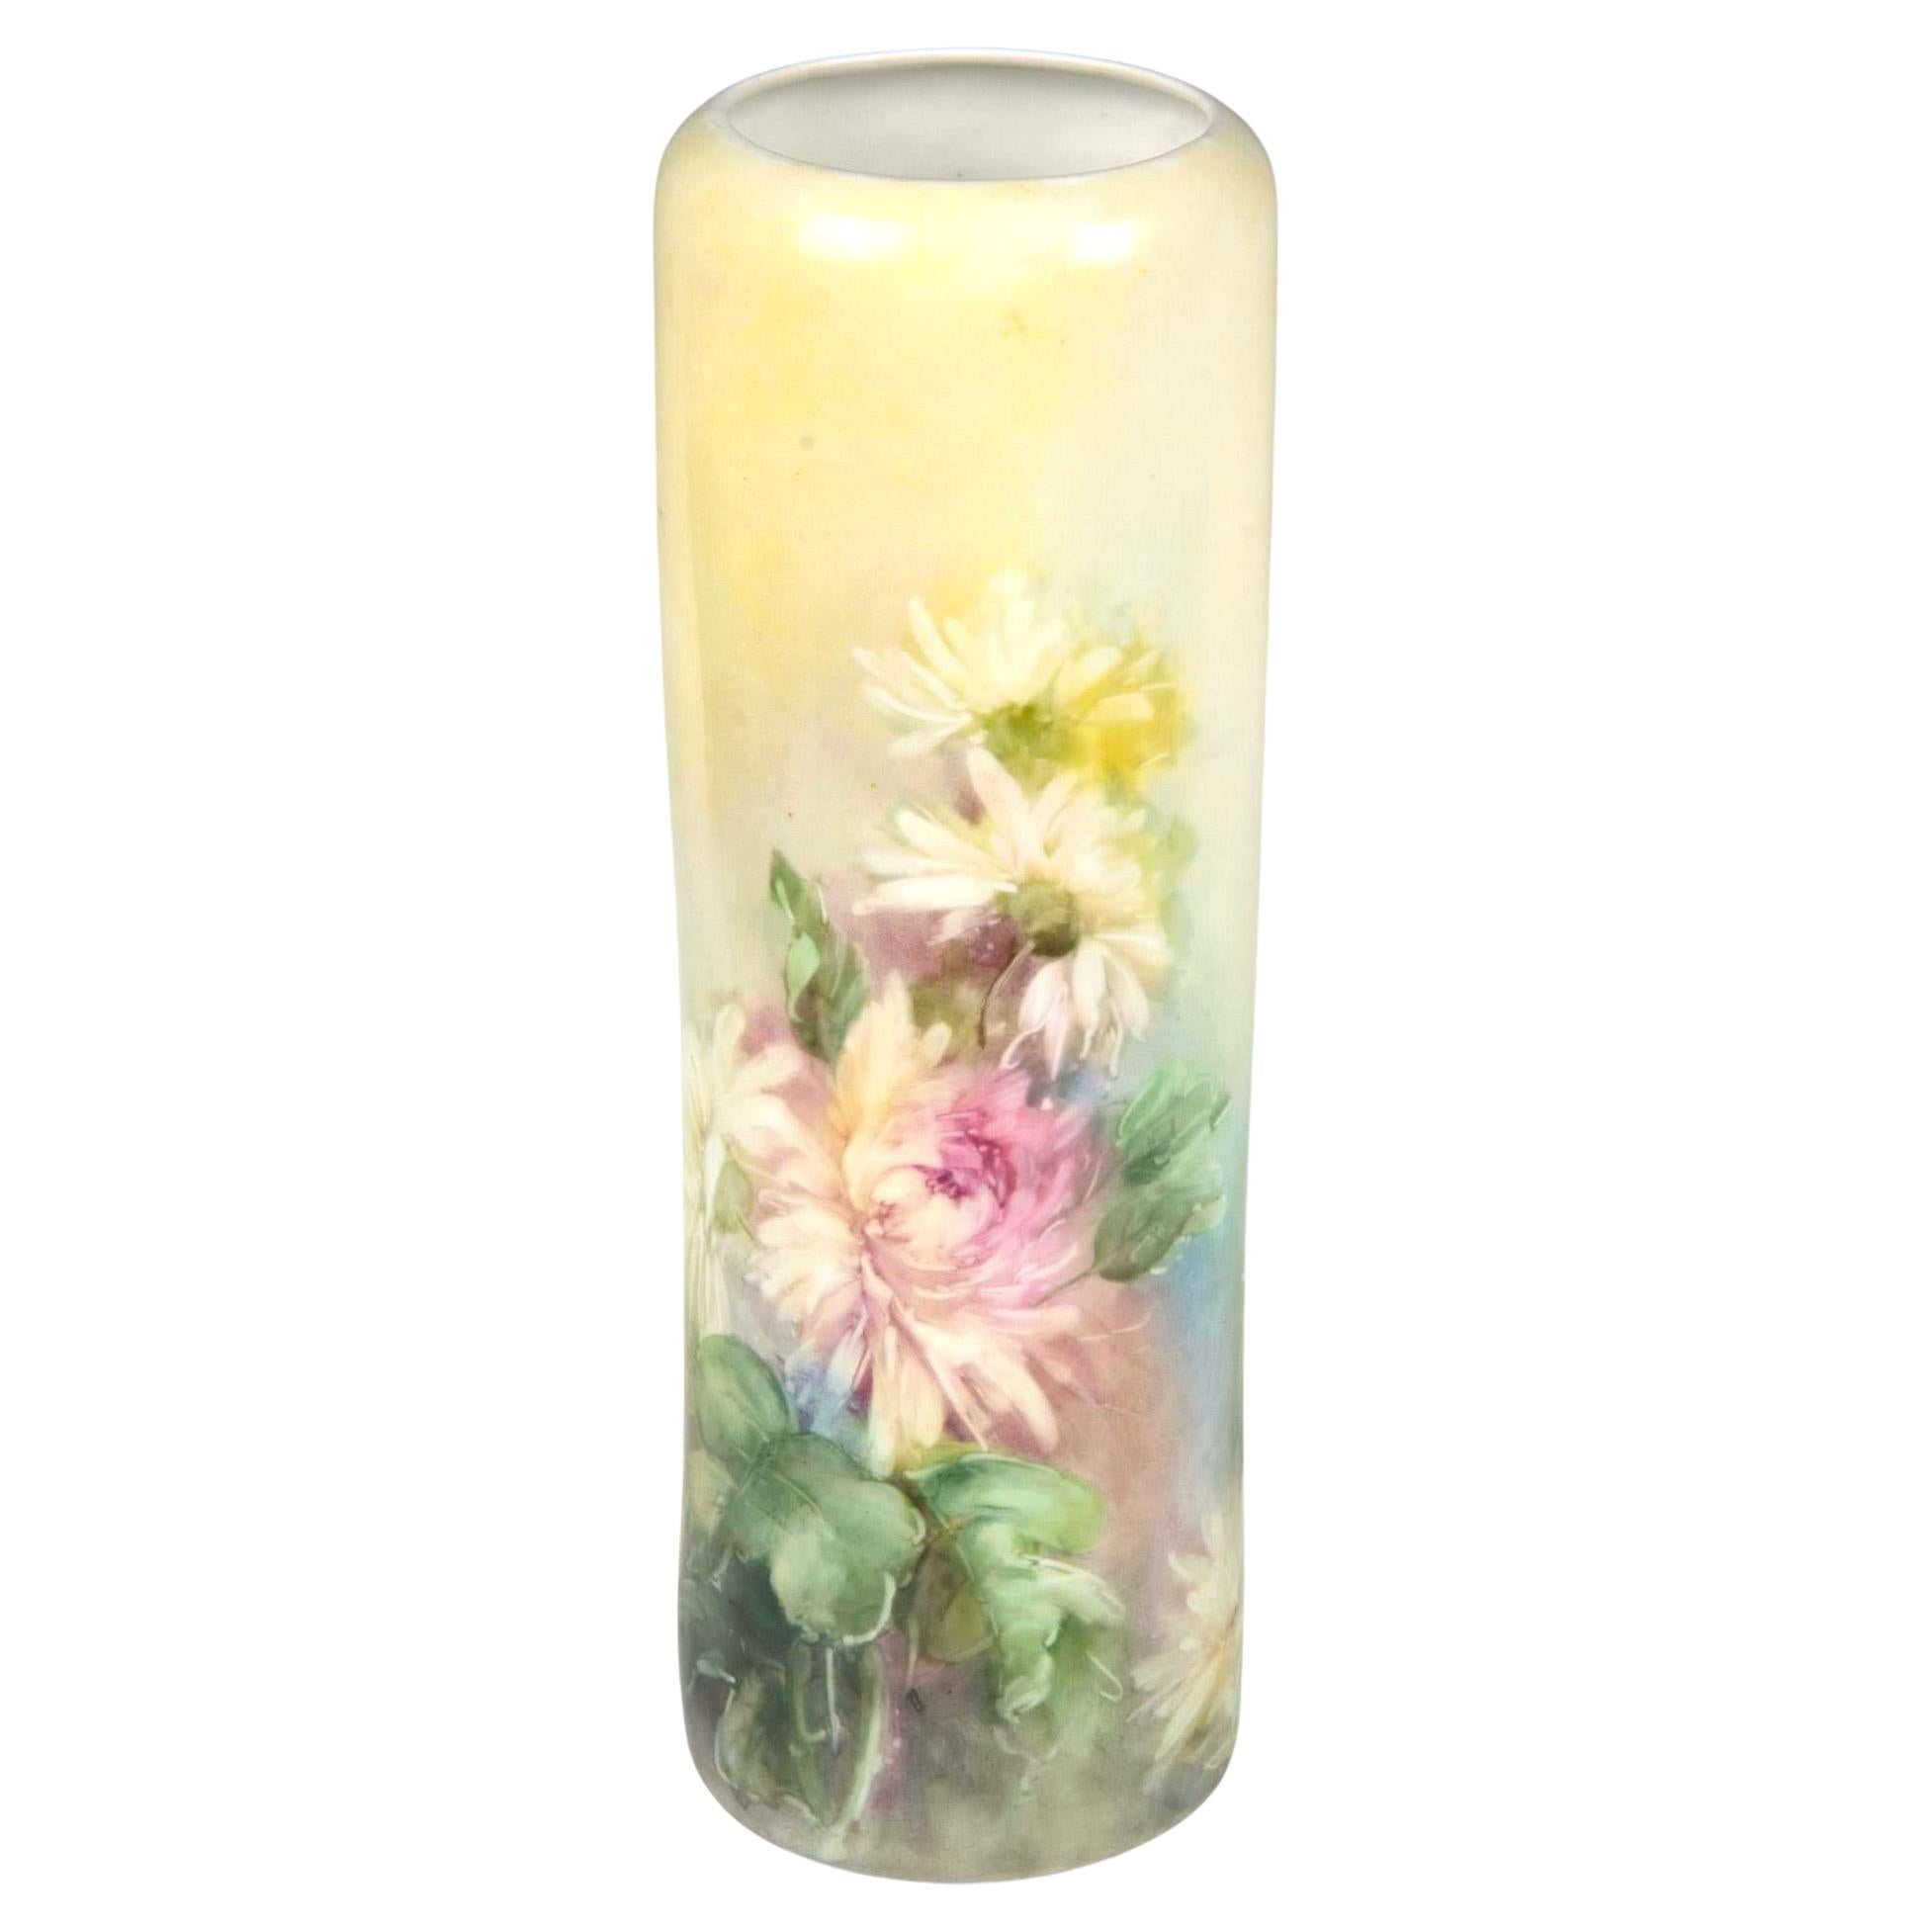 Wir präsentieren eine exquisite antike, handbemalte Blumenvase aus Porzellan aus Wien, Österreich, hergestellt von der renommierten PH Leonard Co. Diese atemberaubende Vase zeigt ein wunderschönes Arrangement aus Blumen und Blättern mit leuchtend